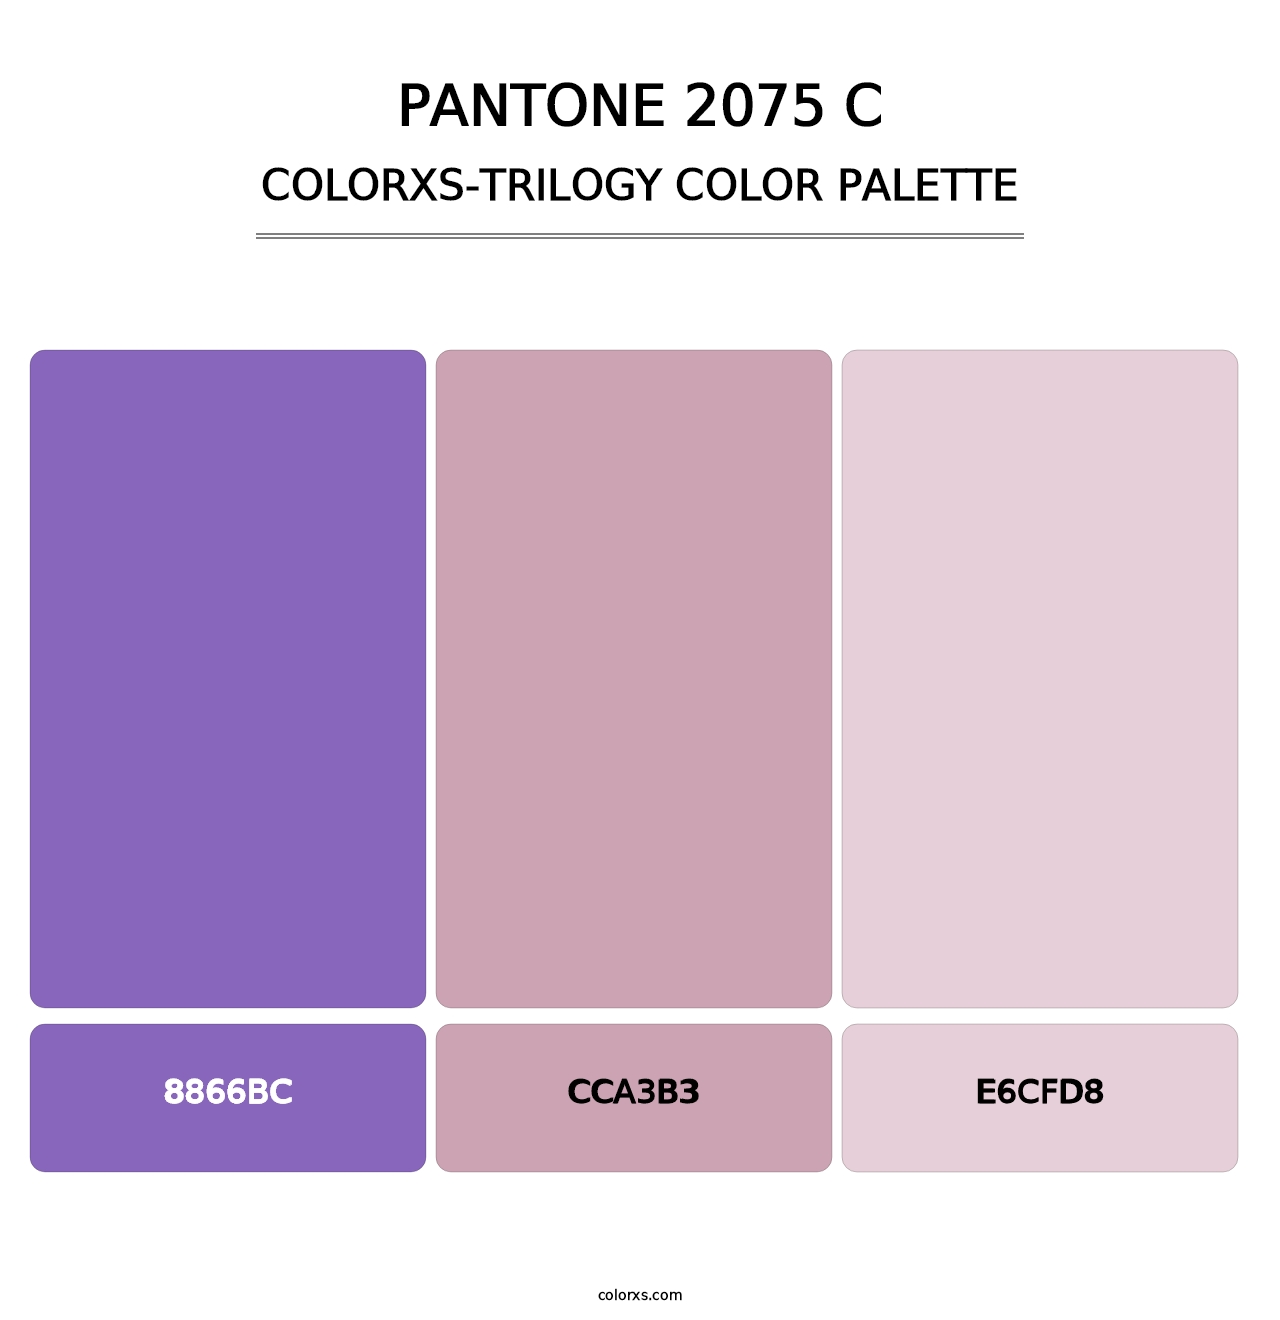 PANTONE 2075 C - Colorxs Trilogy Palette